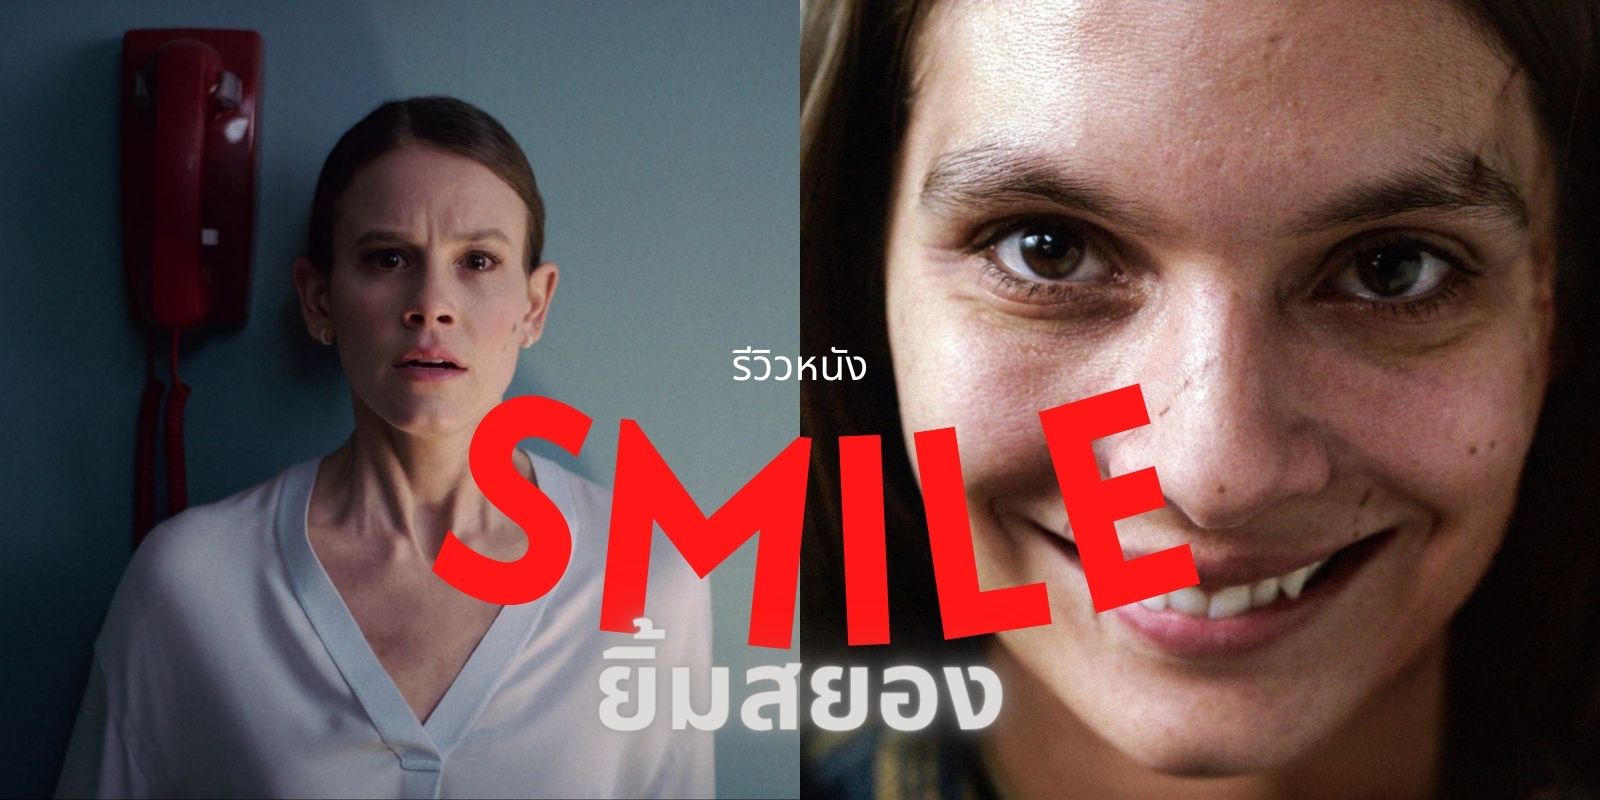 หนังใหม่2022รีวิวหนัง Smile ยิ้มสยอง 2022 ที่ TrueID แล้วจะค้นพบว่า การยิ้มไม่ได้สวยงามเสมอ